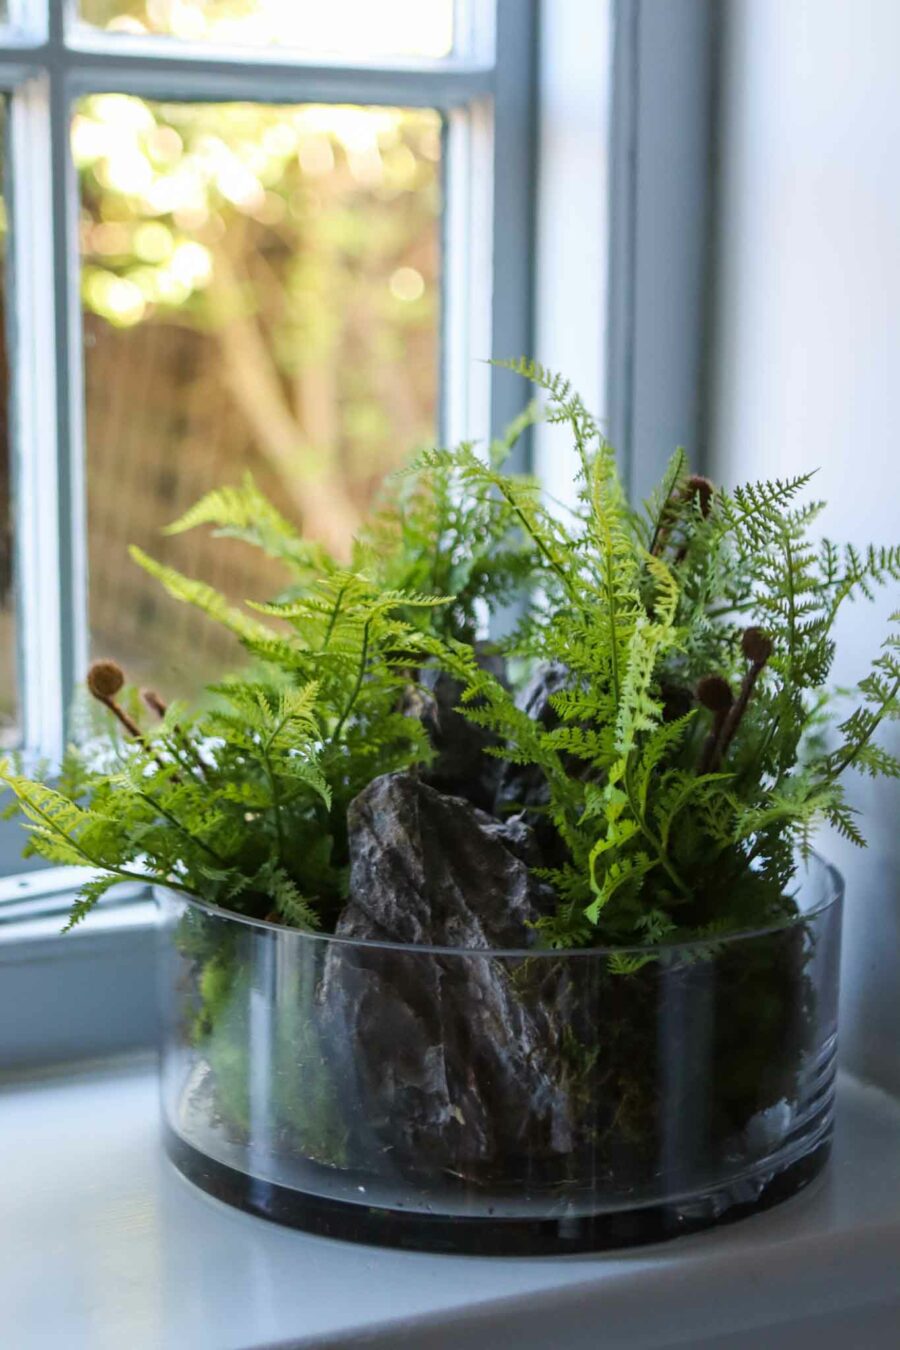 wolferton fern plant in glass bowl